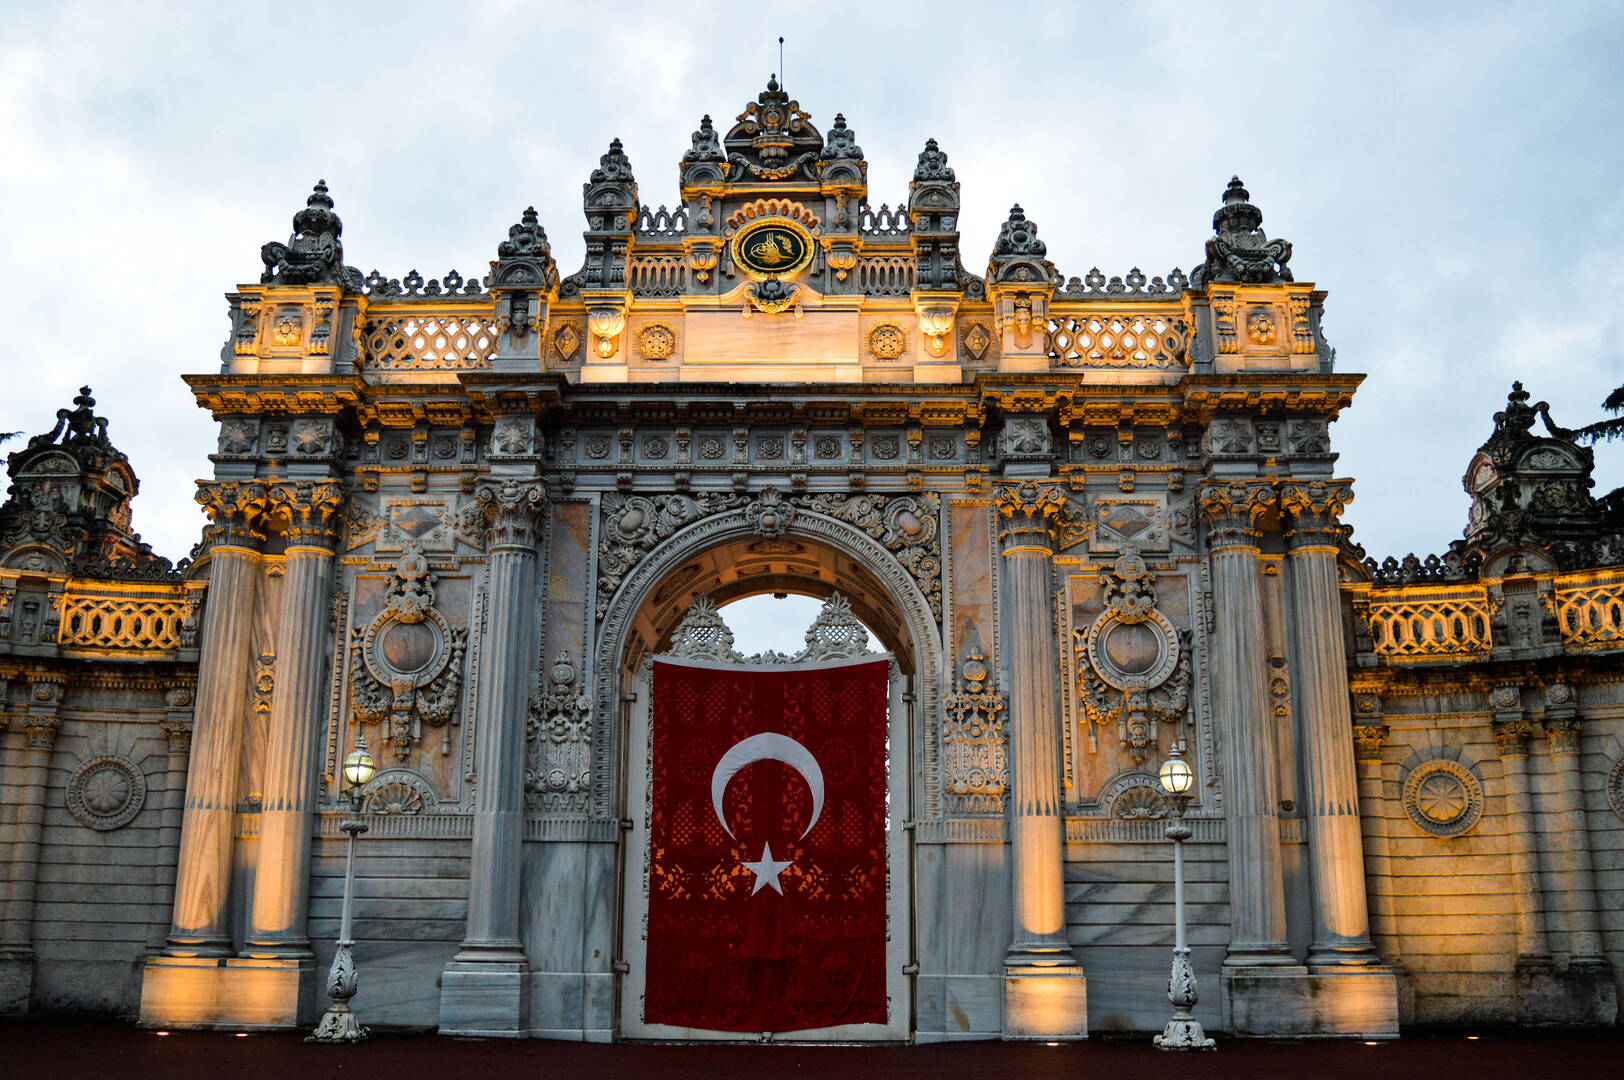 تحالف الأحزاب المعارضة في تركيا يصدر بيانا حول مرشحه للرئاسة